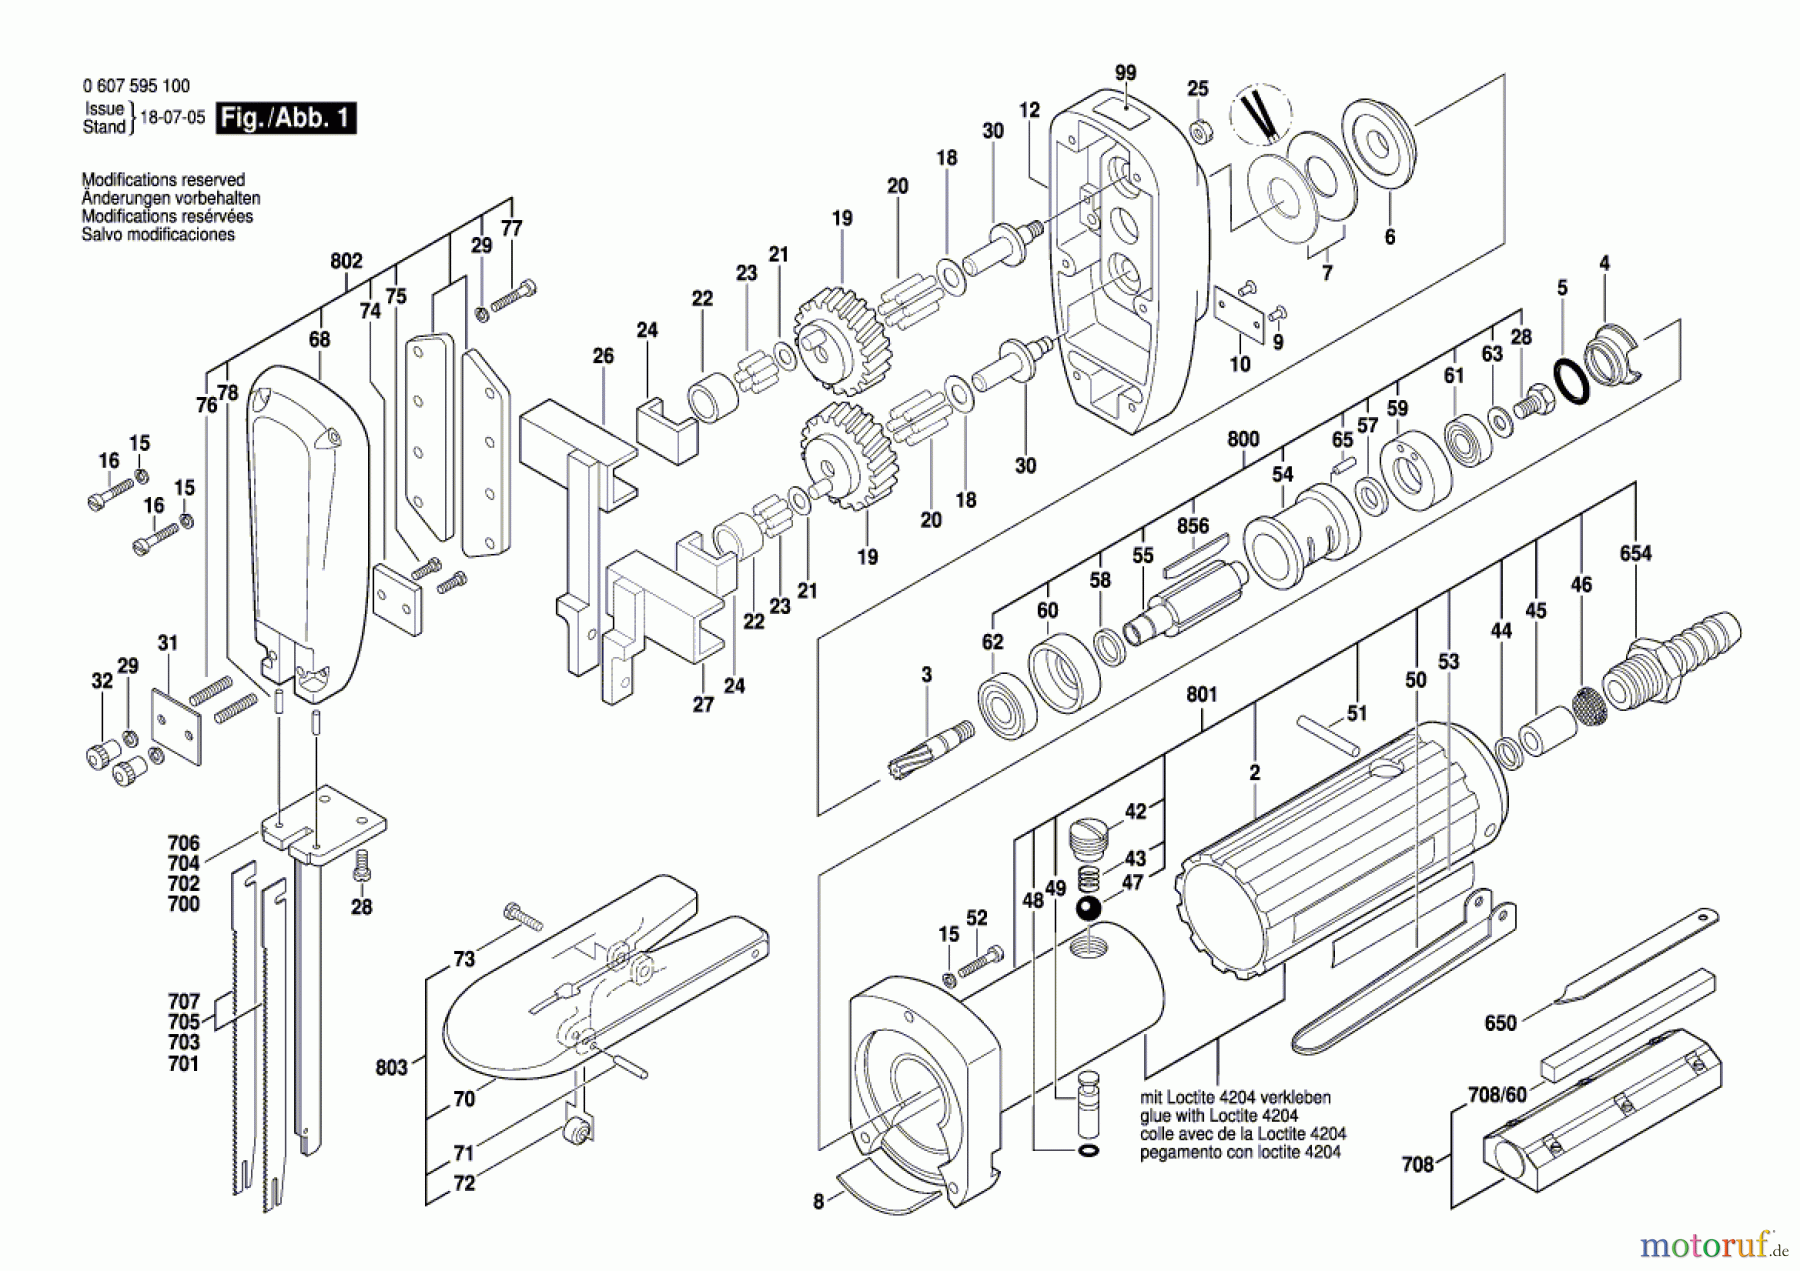  Bosch Werkzeug Pw-Schaumstoffsäge 7595-100 Seite 1